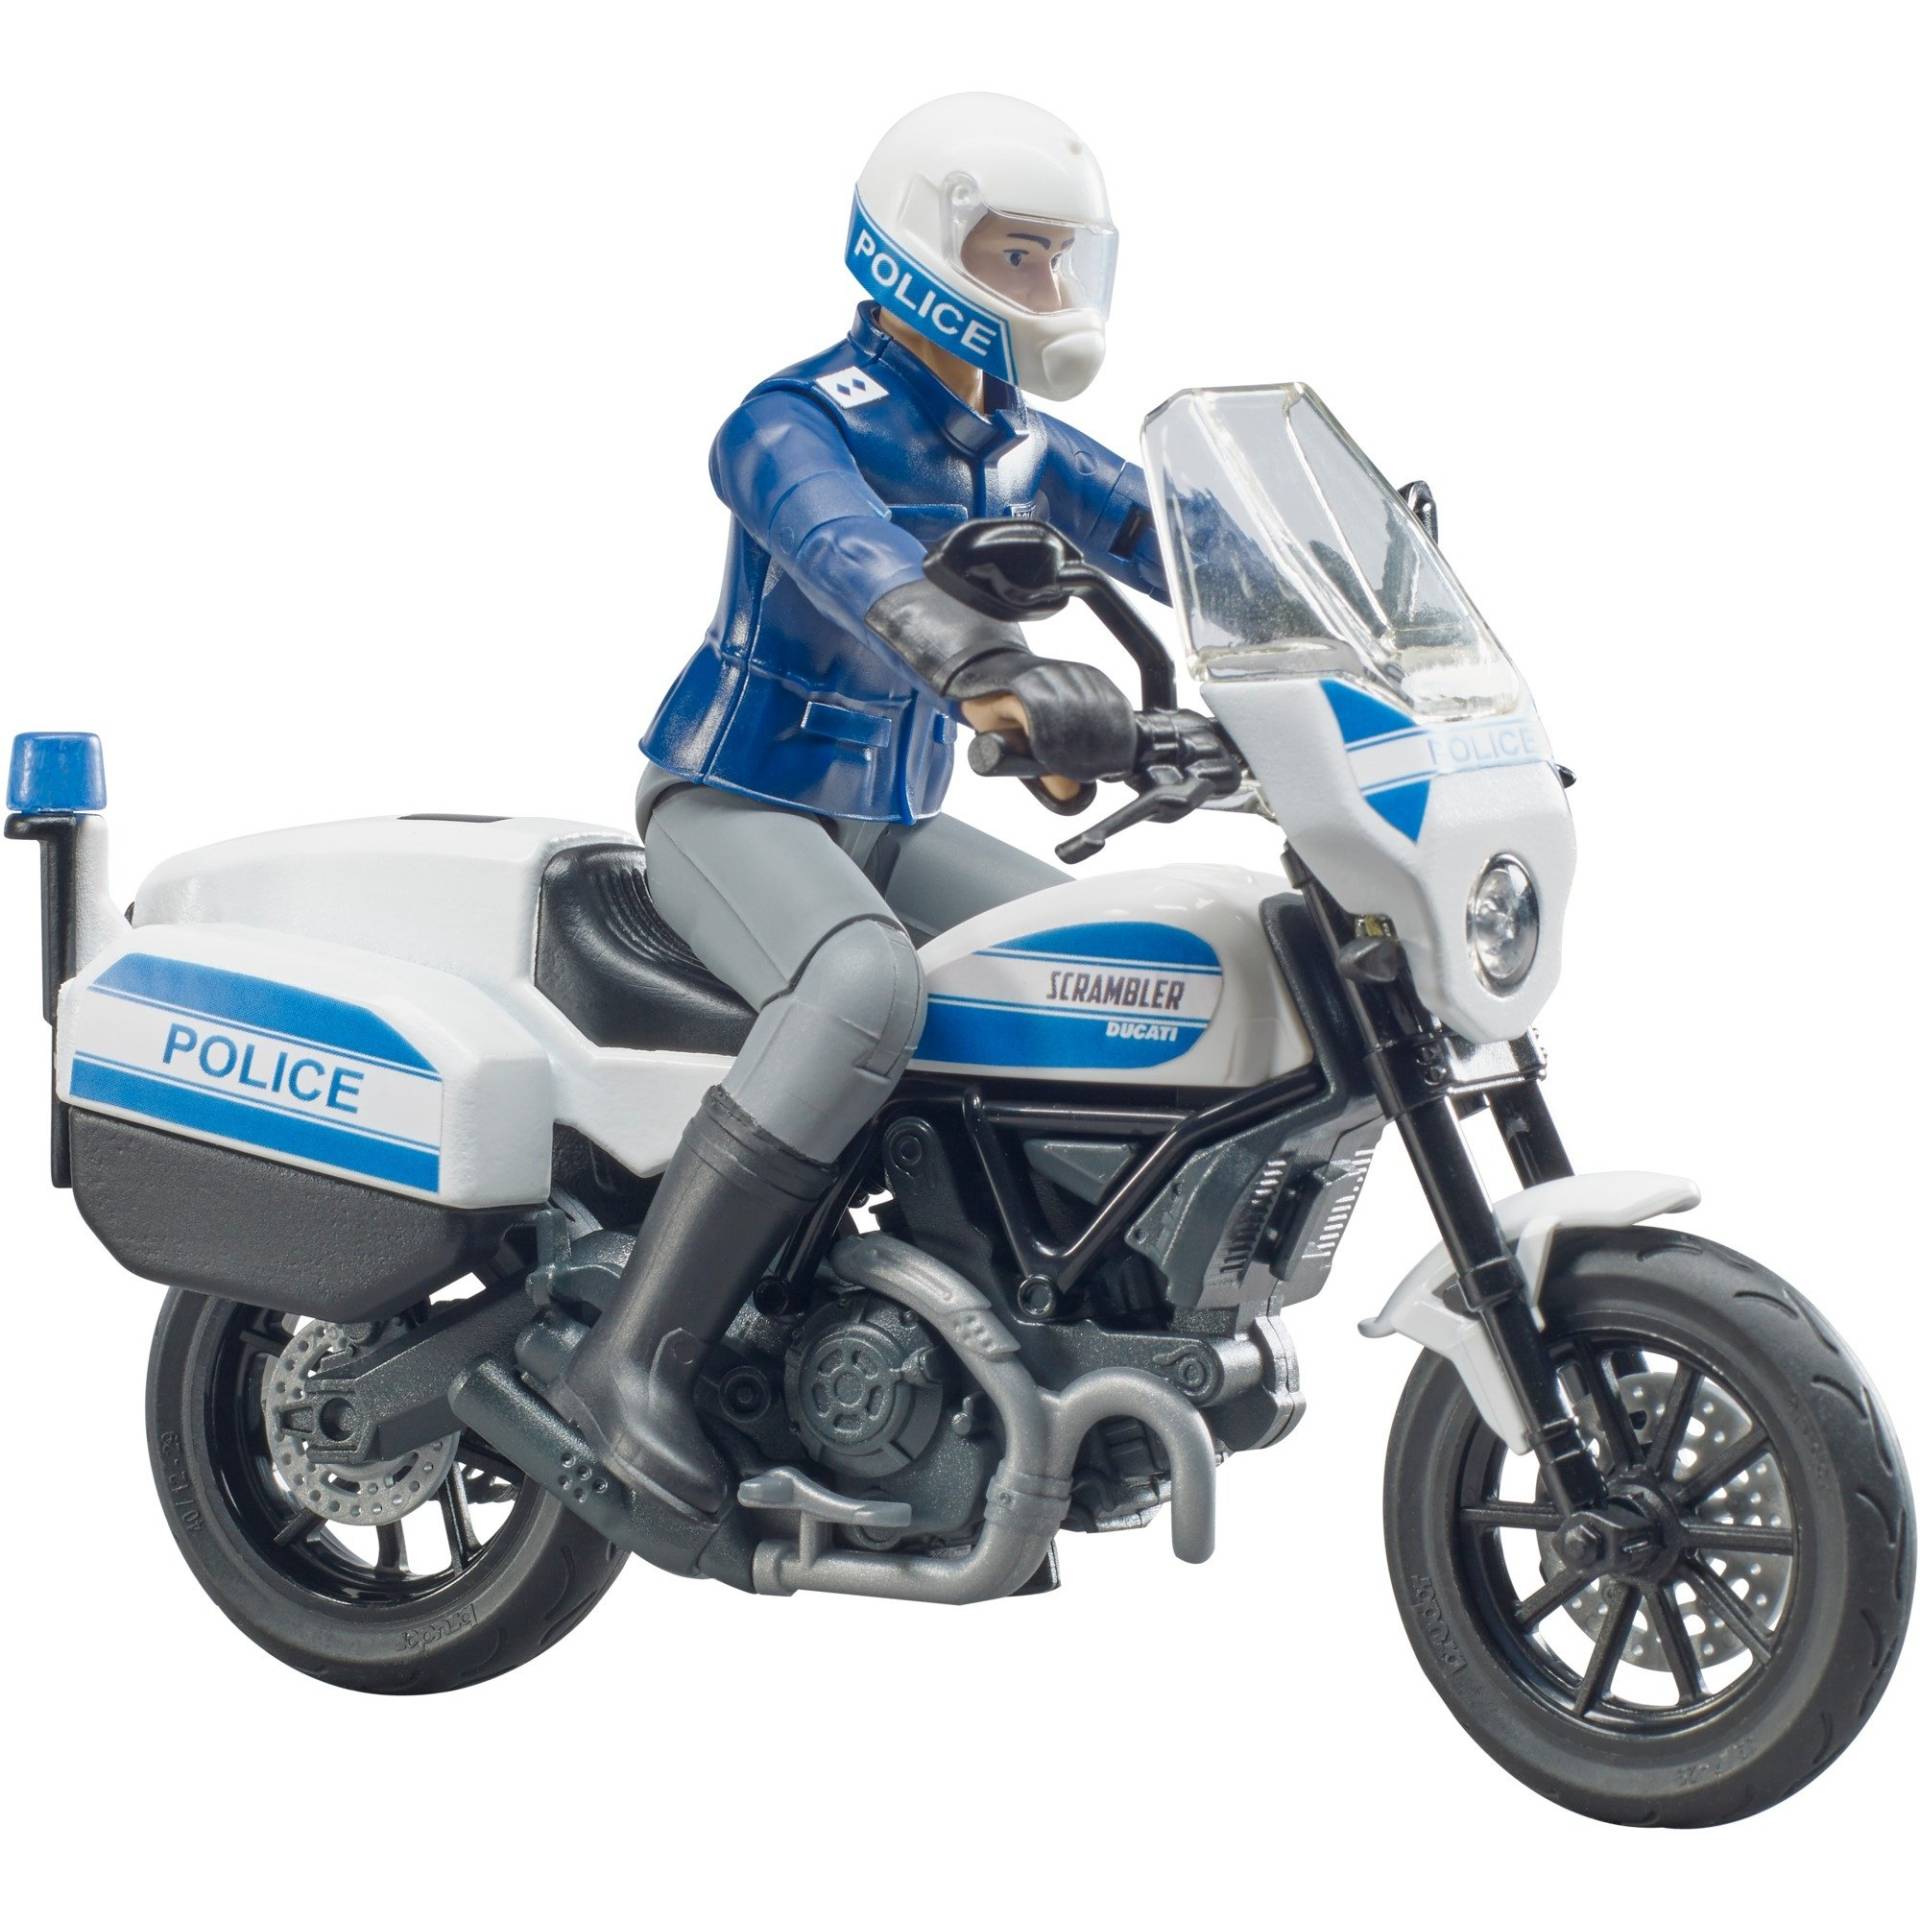 bworld Scrambler Ducati Polizeimotorrad, Modellfahrzeug von Bruder